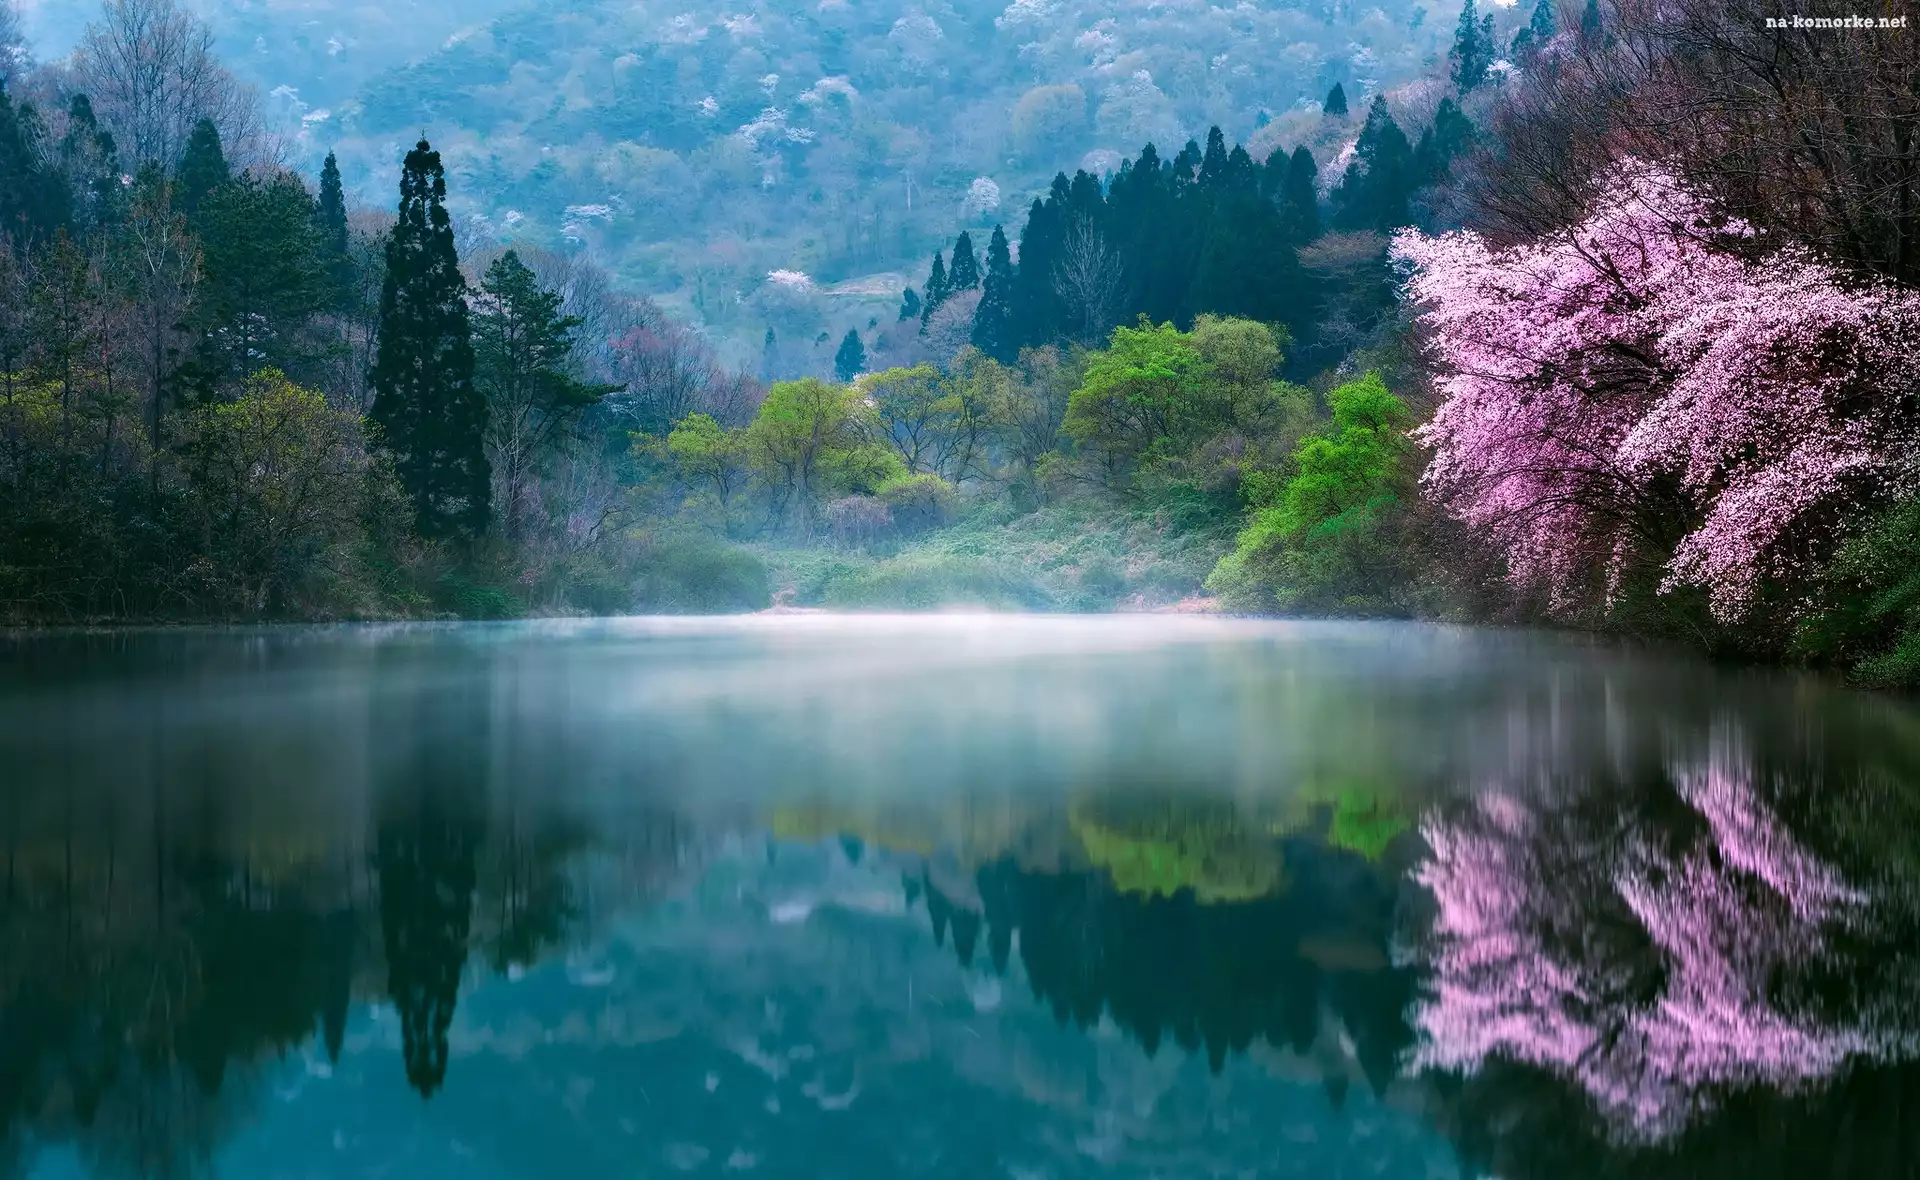 Poranek, Wiosna, Korea Południowa, Drzewa
, Jezioro, Mgła